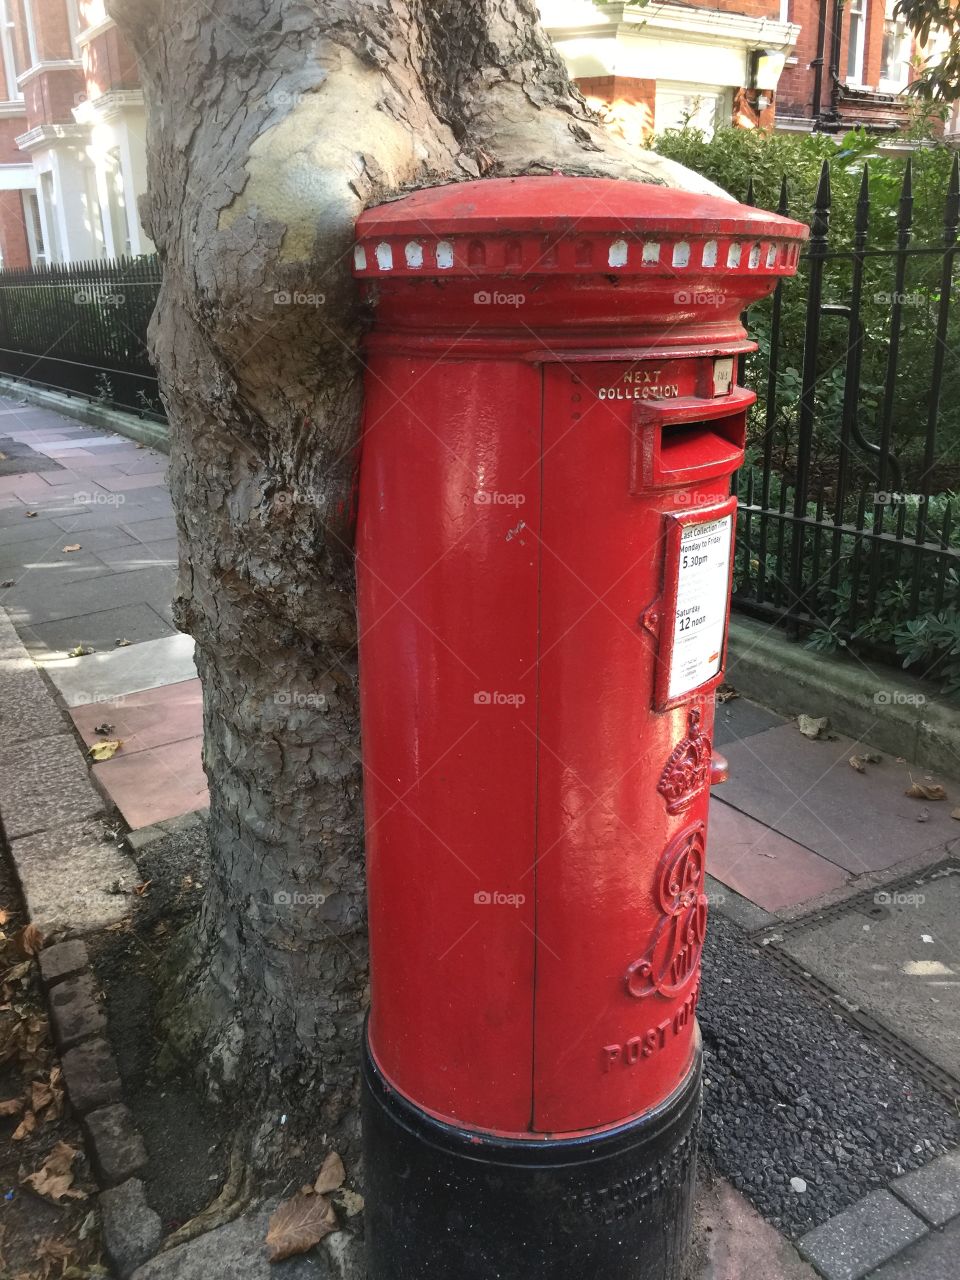 Tree hugging a post box in Kensington, London. UK